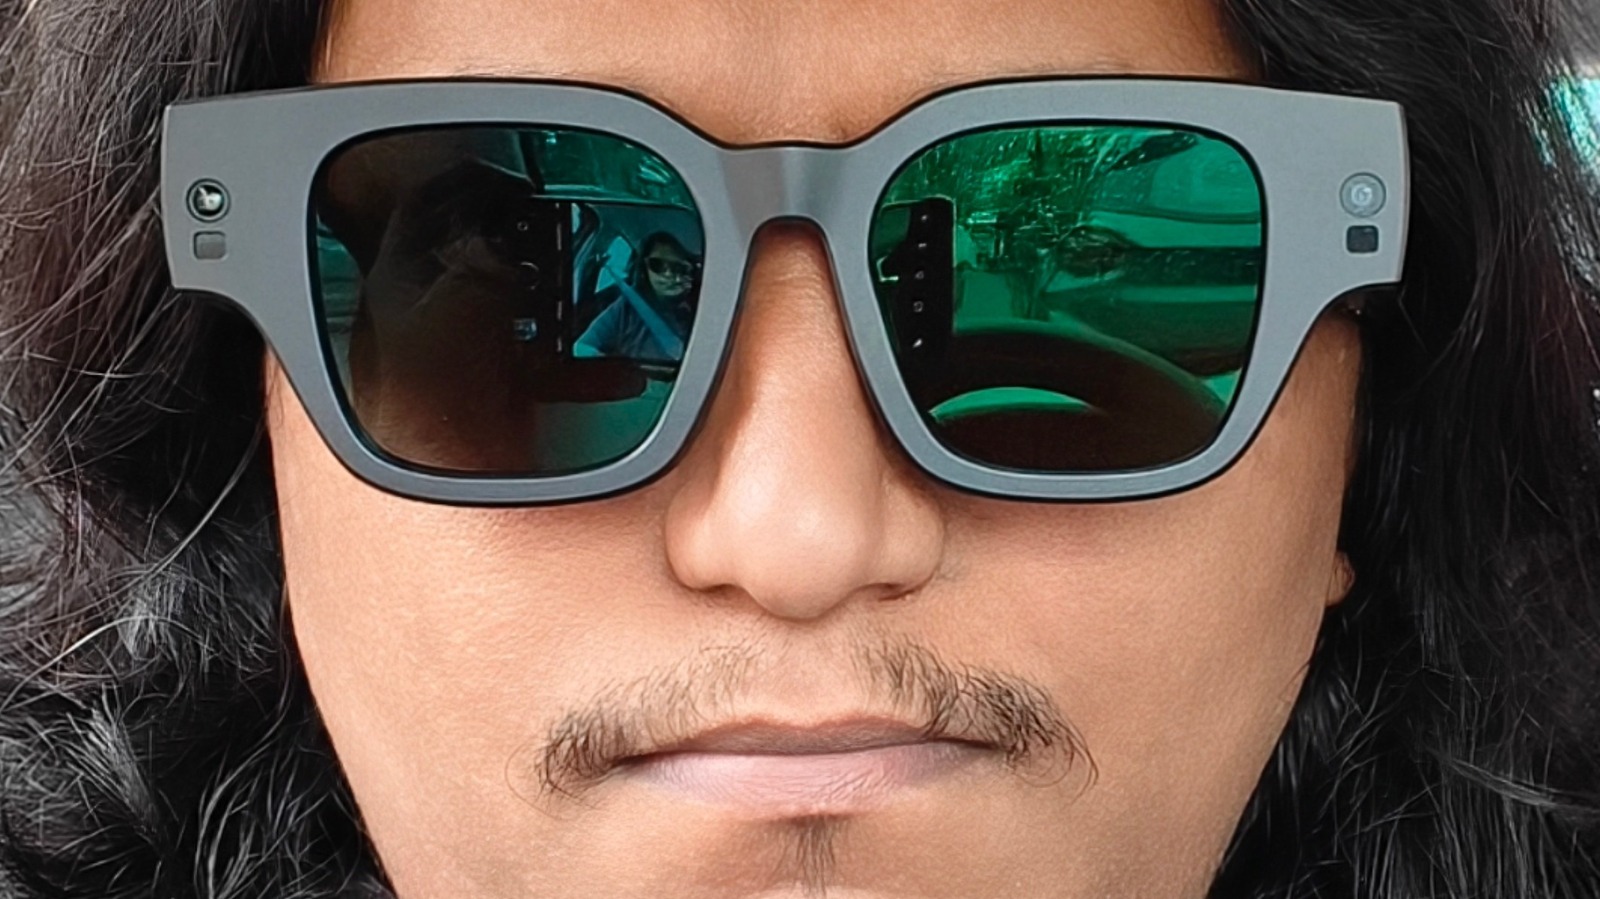 Inmo Air2 Review: Affordable AR Glasses With A Few Key Flaws – SlashGear